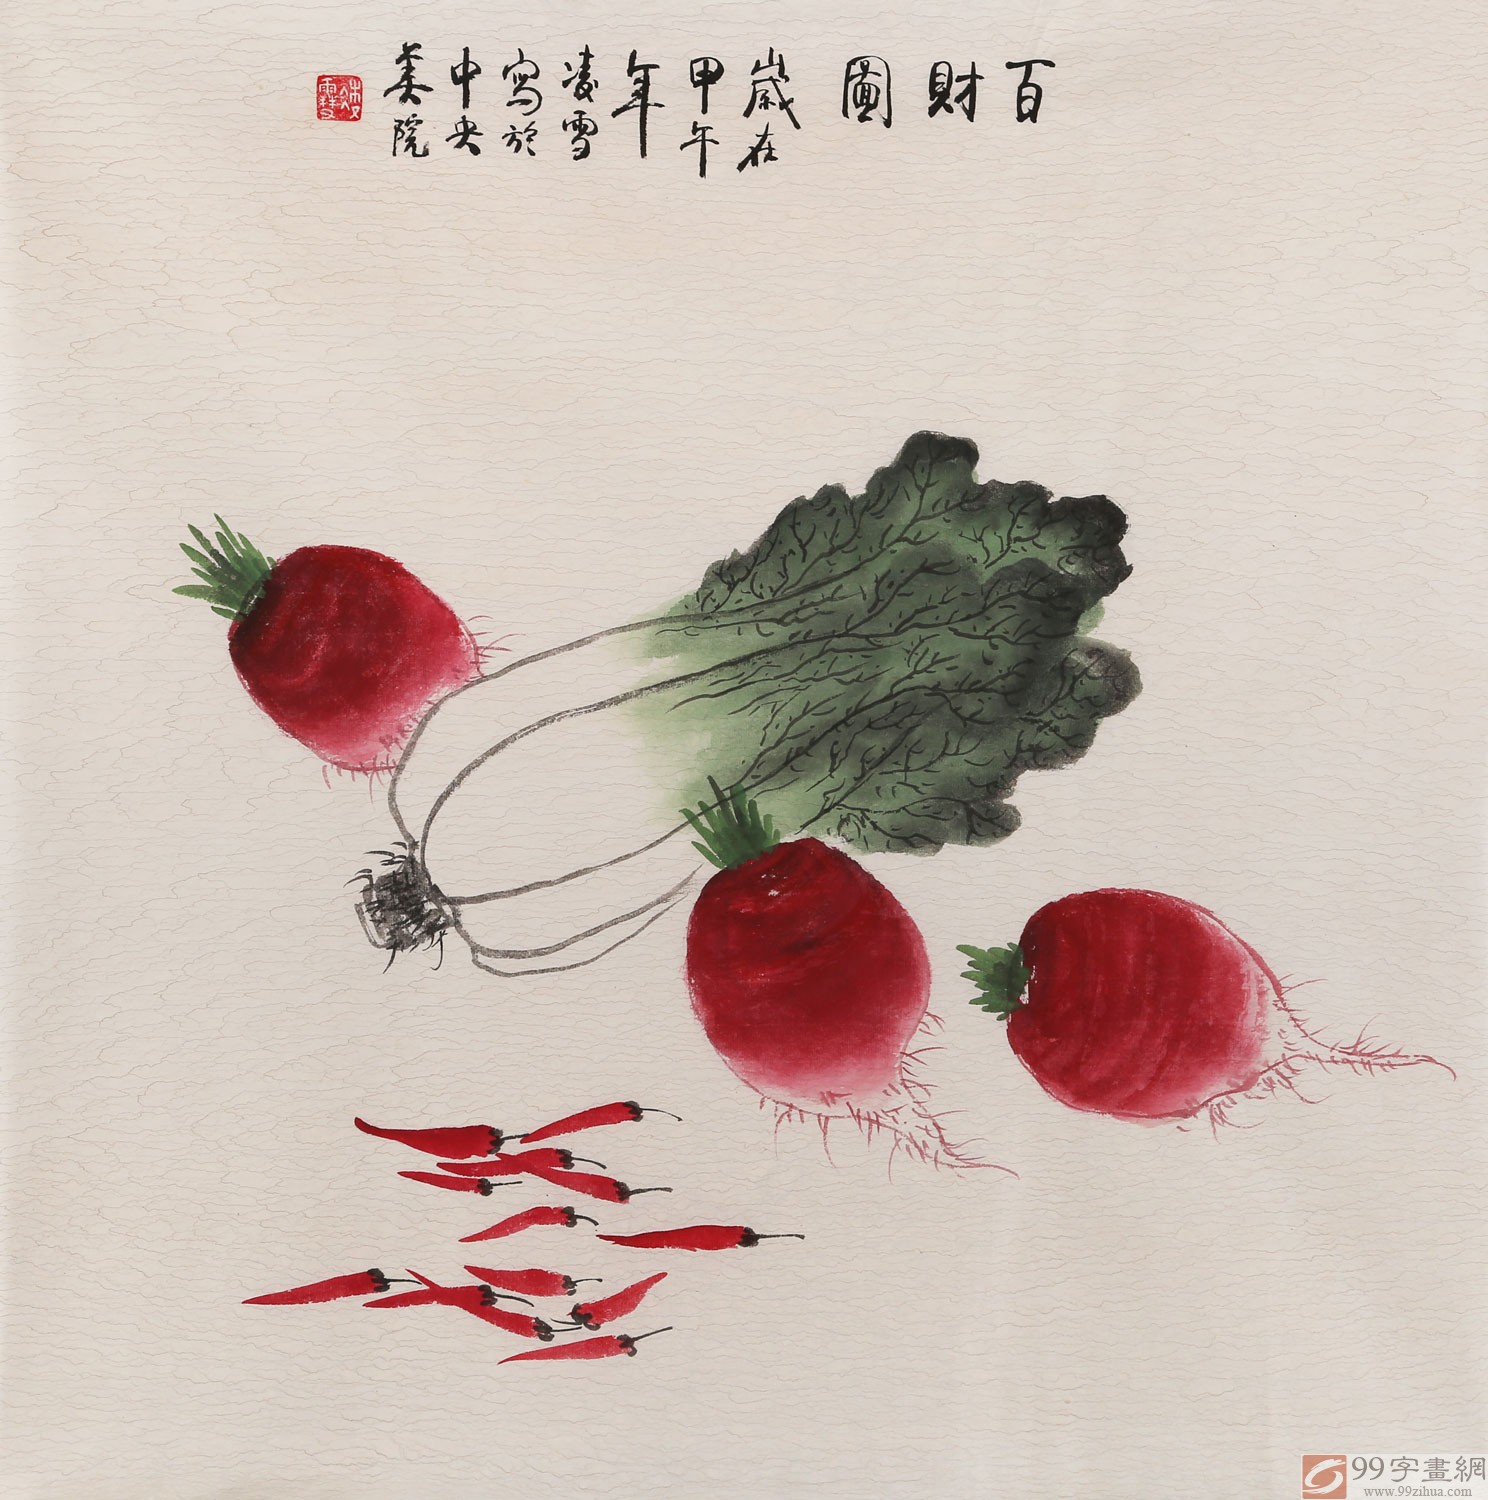 《一串红》获93年中国画大展二等奖,《迎春》获中国大城市美展一等奖.